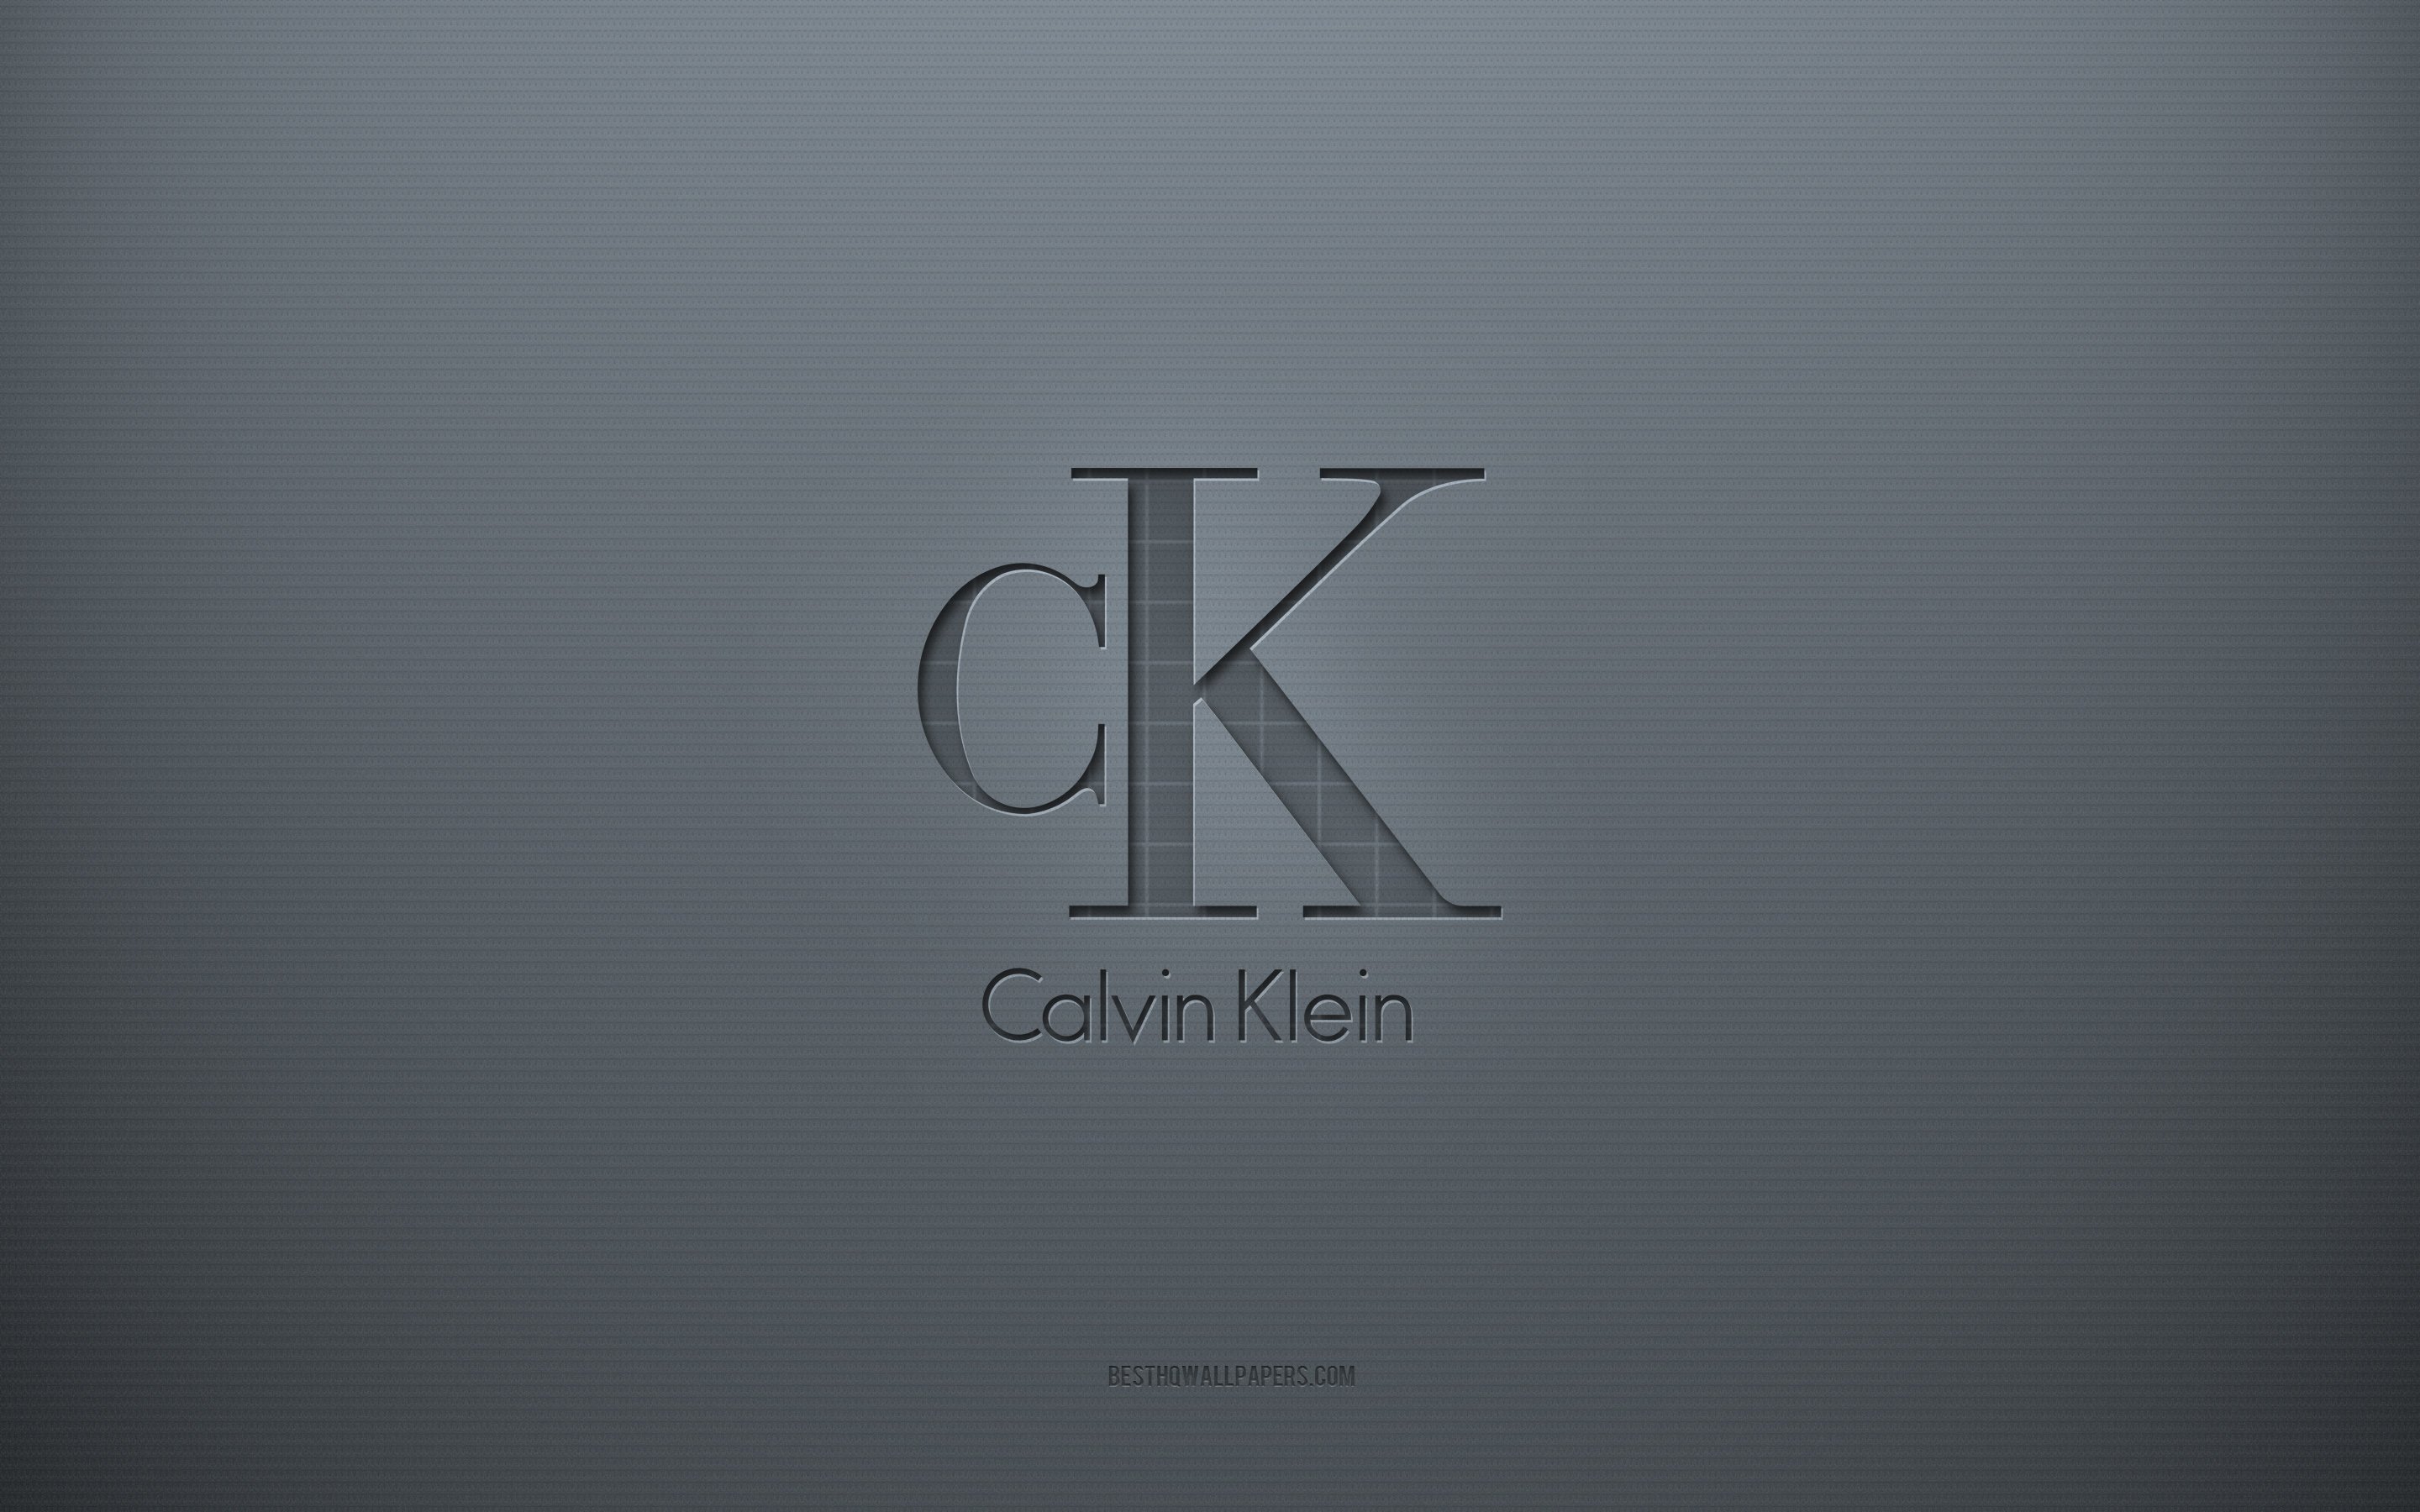 Обои на телефон Calvin Klein